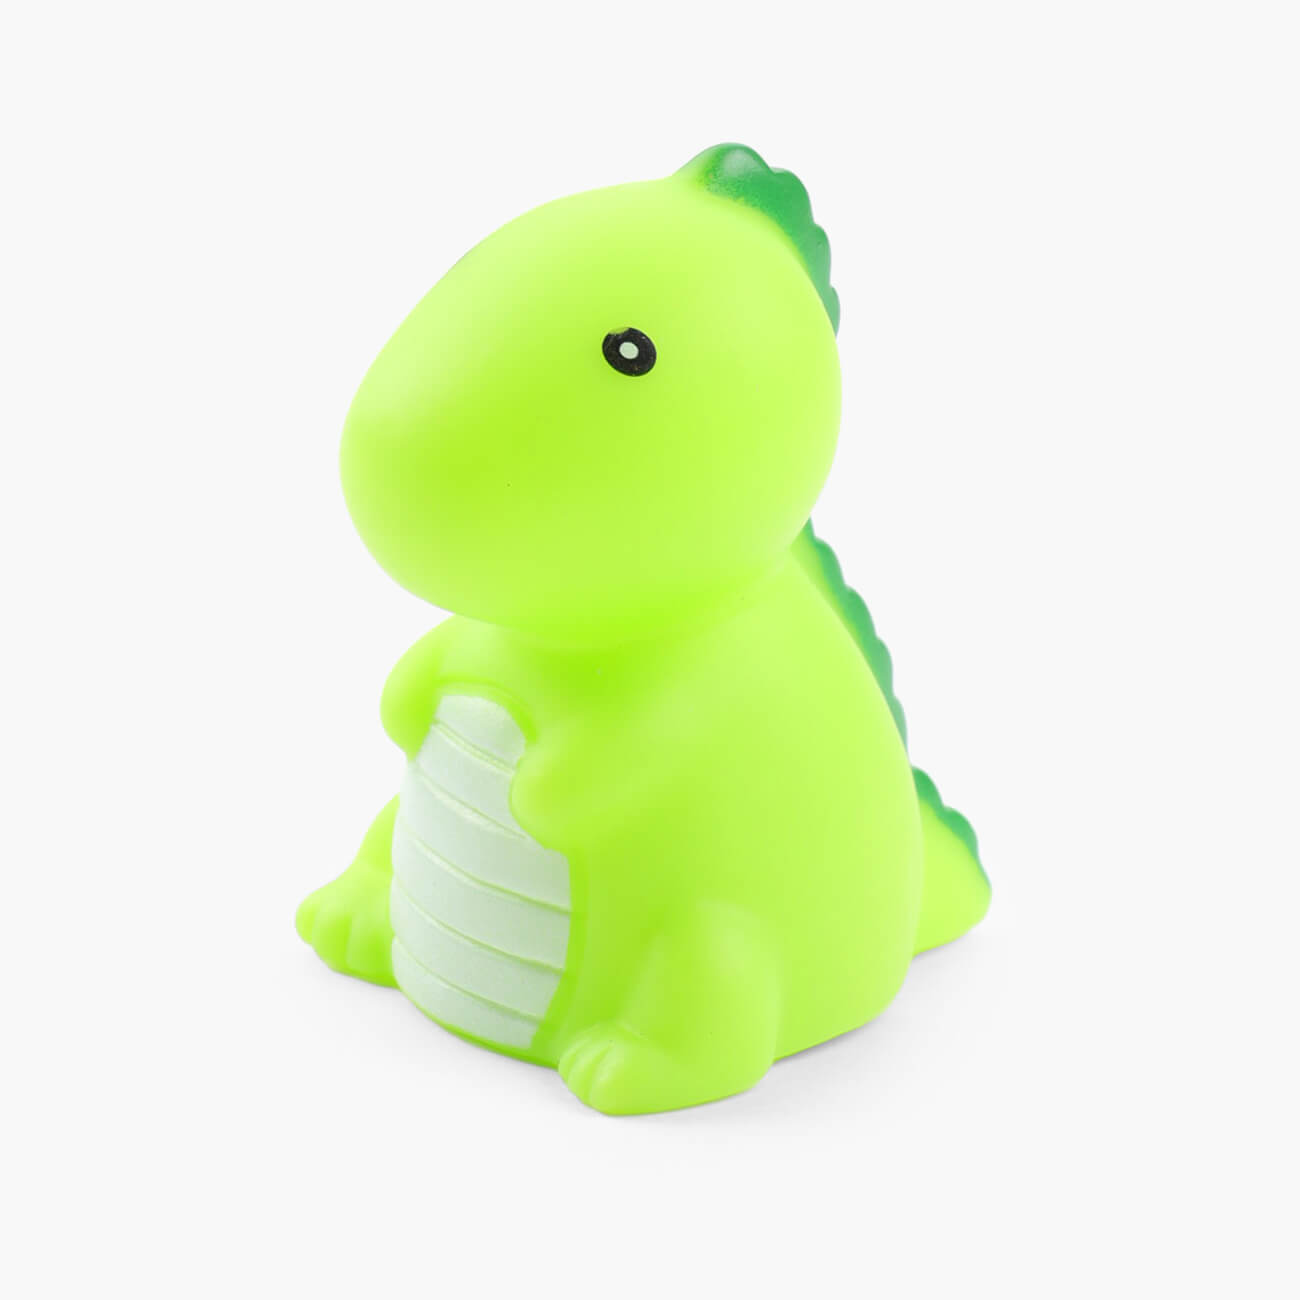 Игрушка для купания, 7х5х5 см, с подсветкой, пластик, голубая, Динозавр, Dino интерактивная игрушка динозавр трицератопс